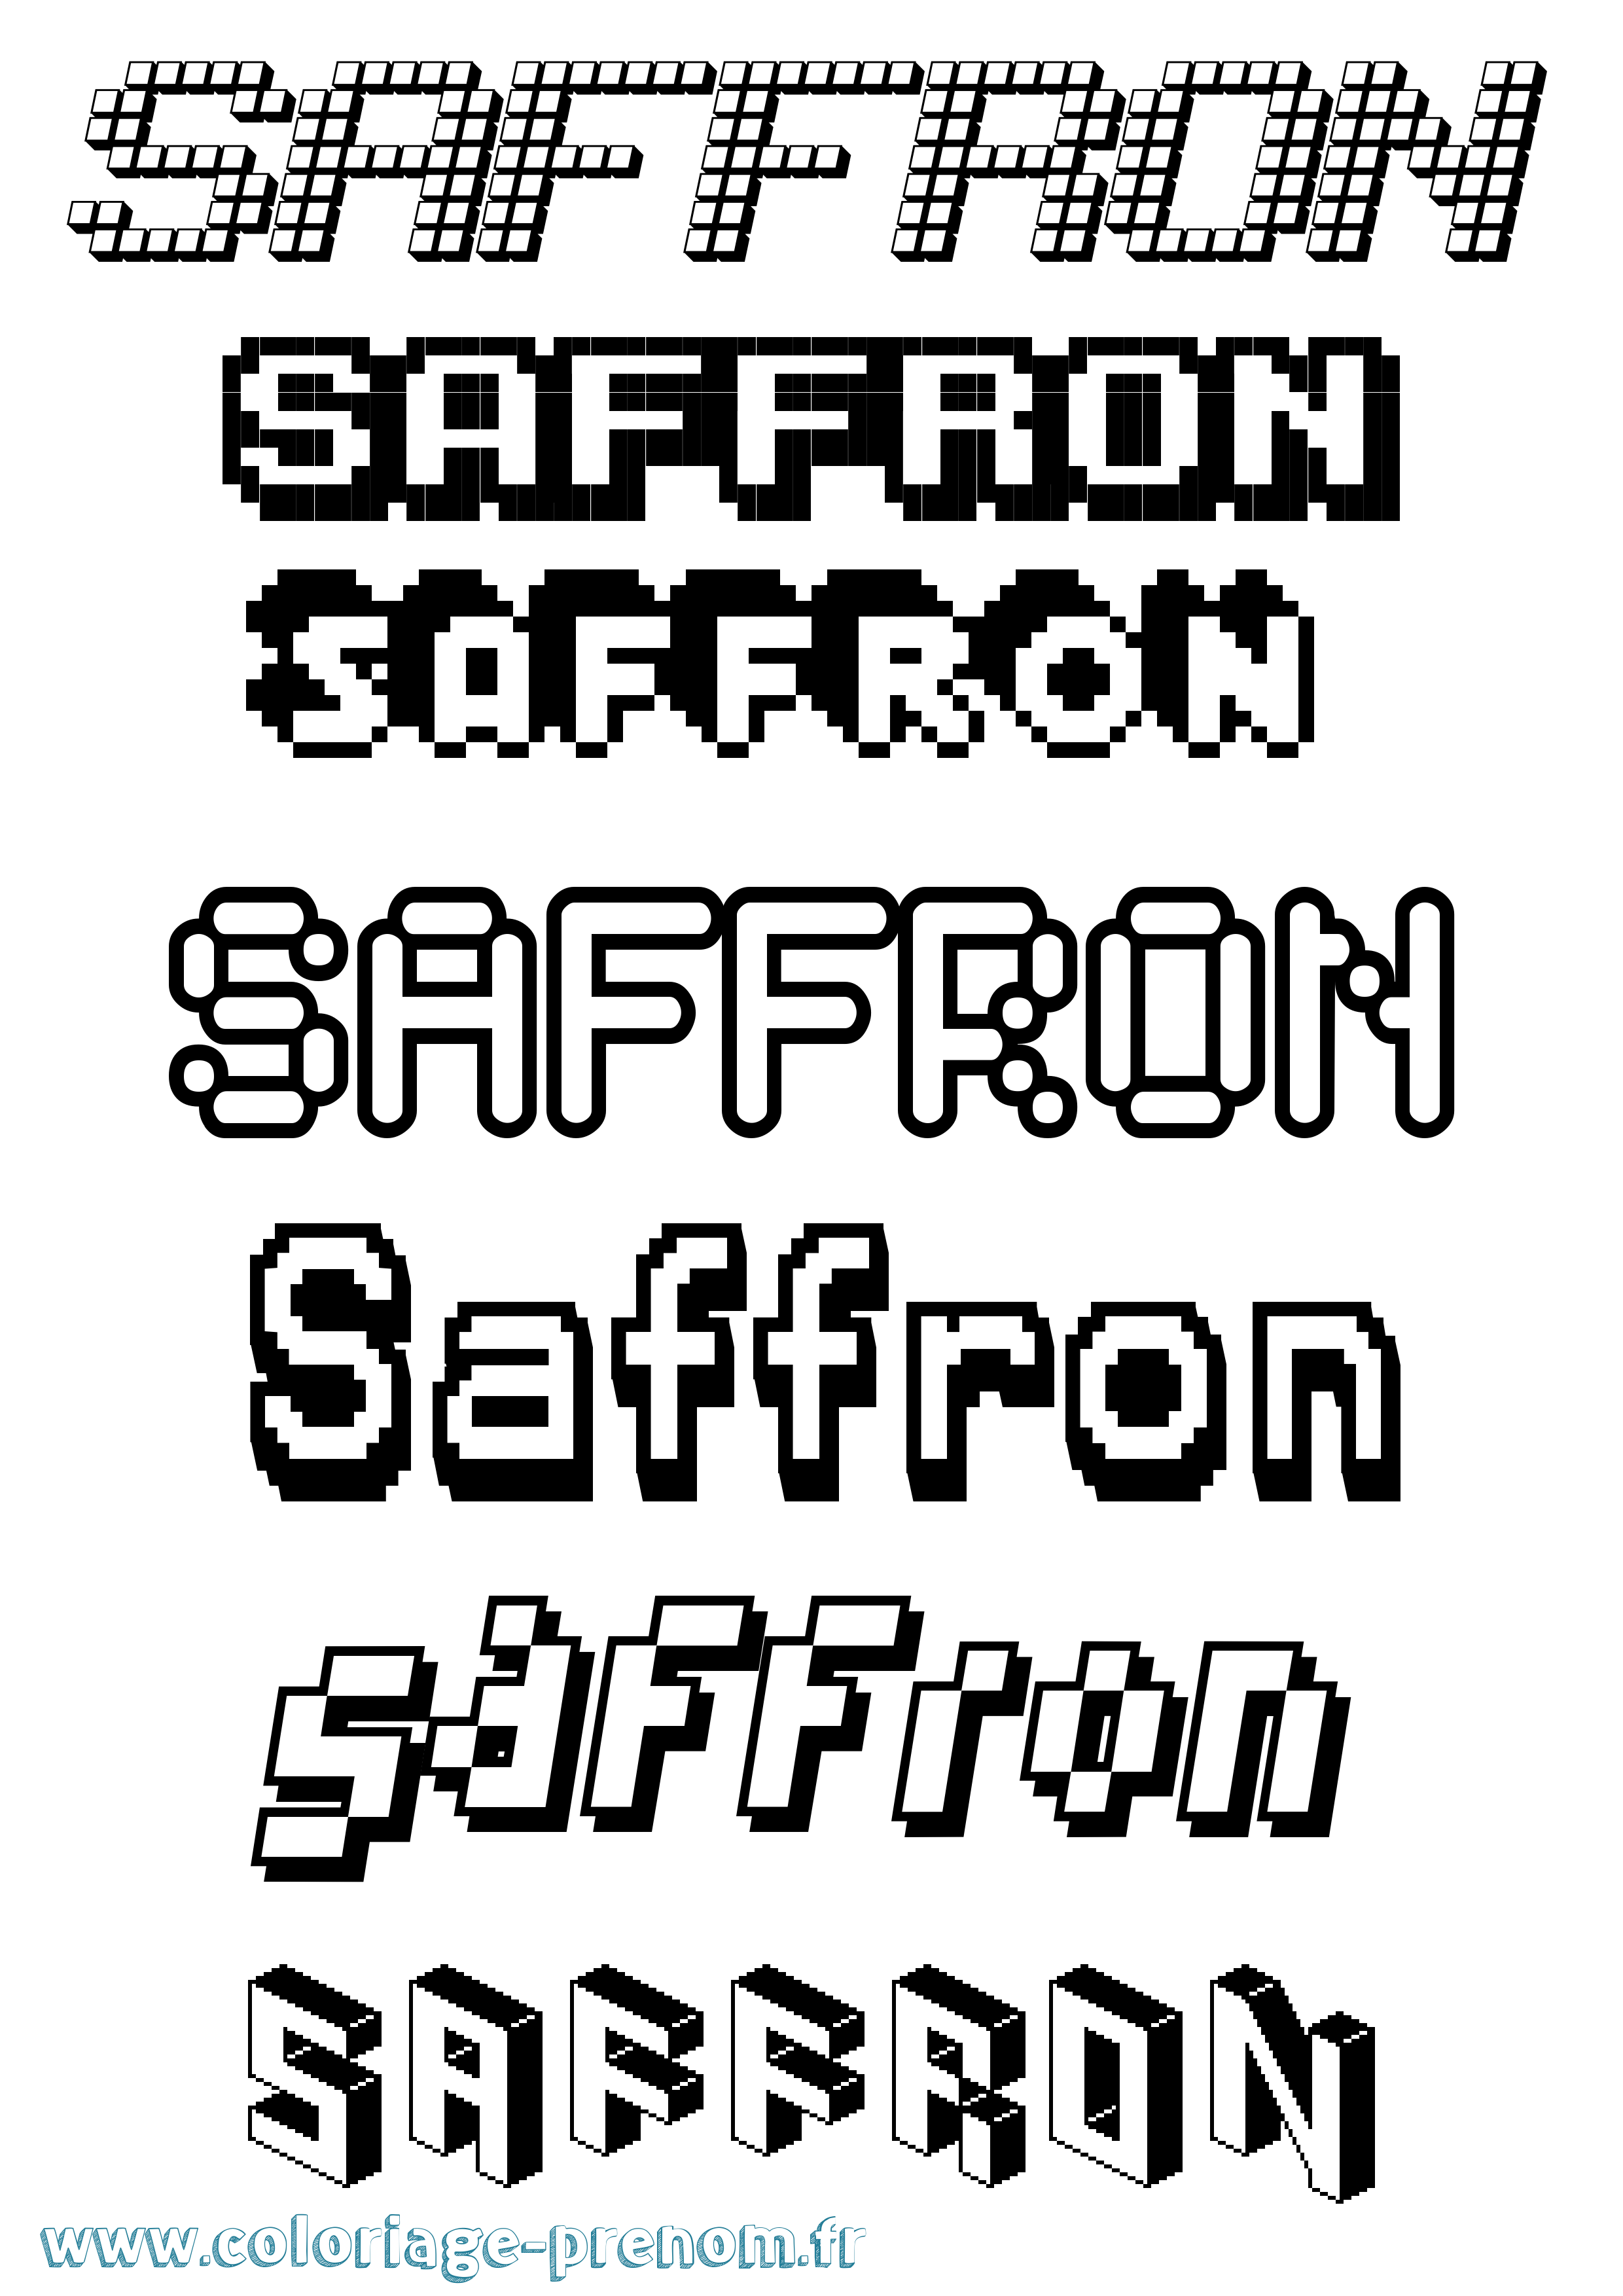 Coloriage prénom Saffron Pixel